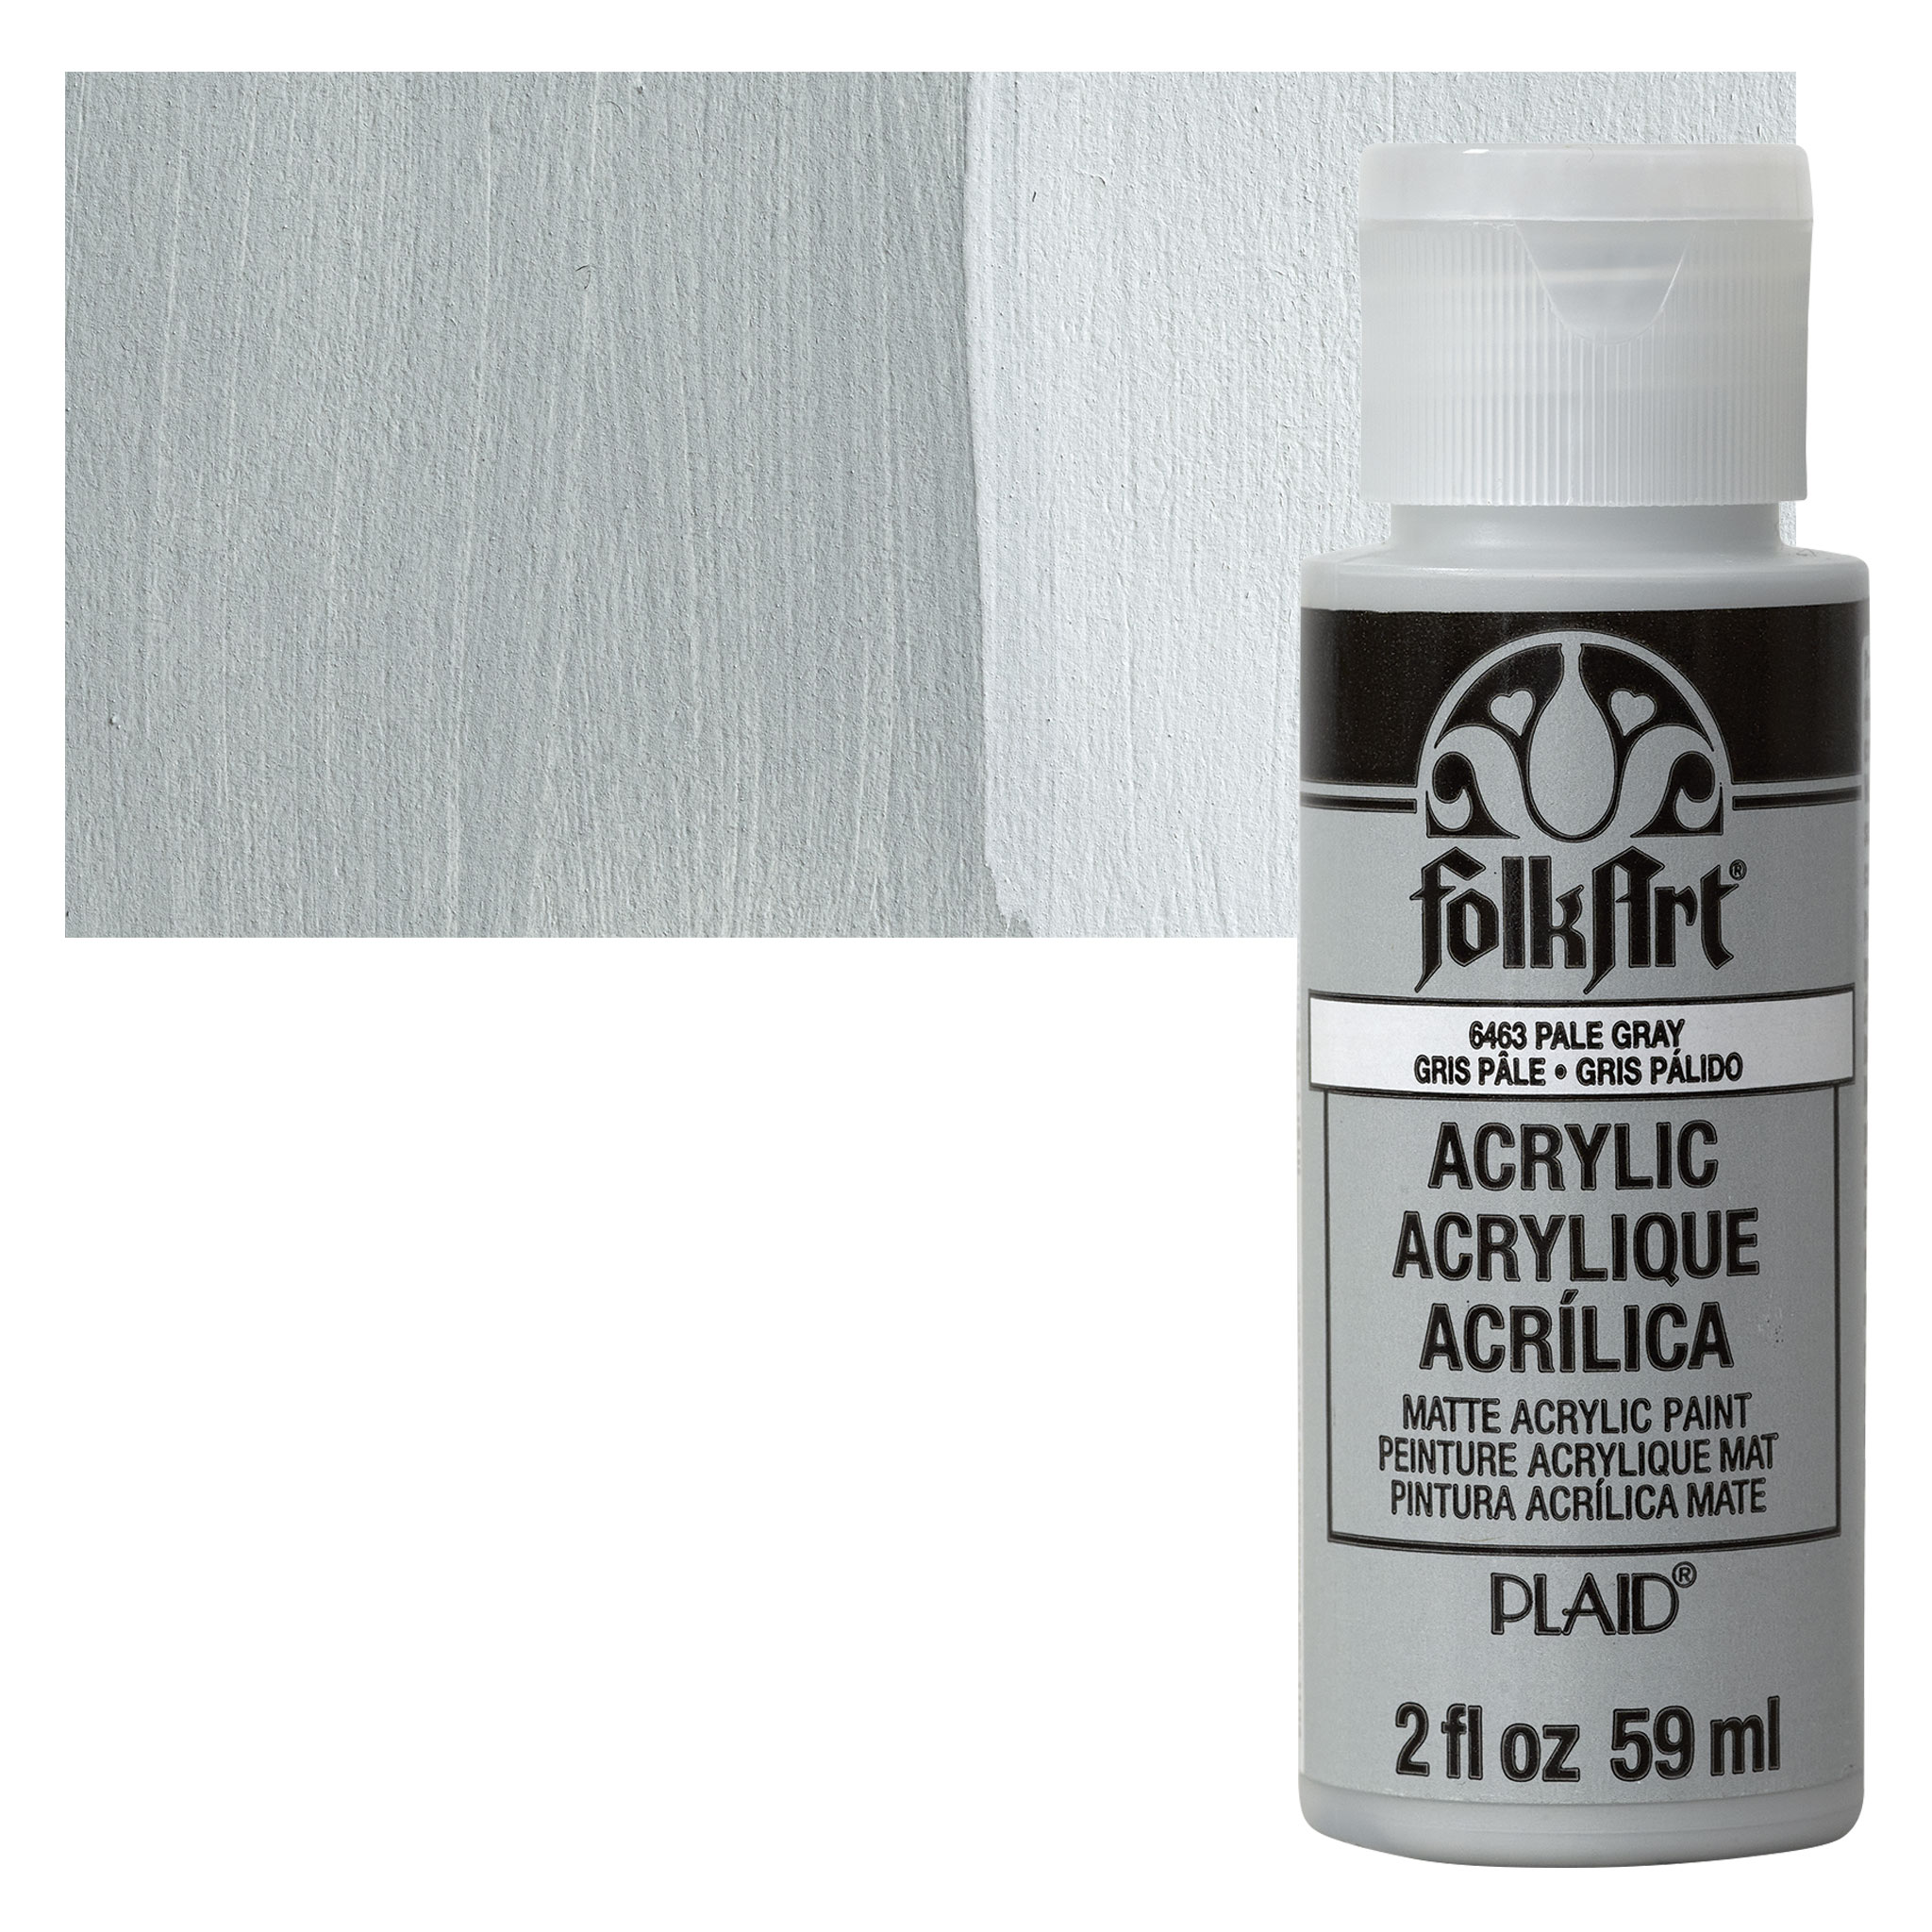 Folkart Acrylic paint, 59 ml bottle, for wood, cardboard, plaster etc.